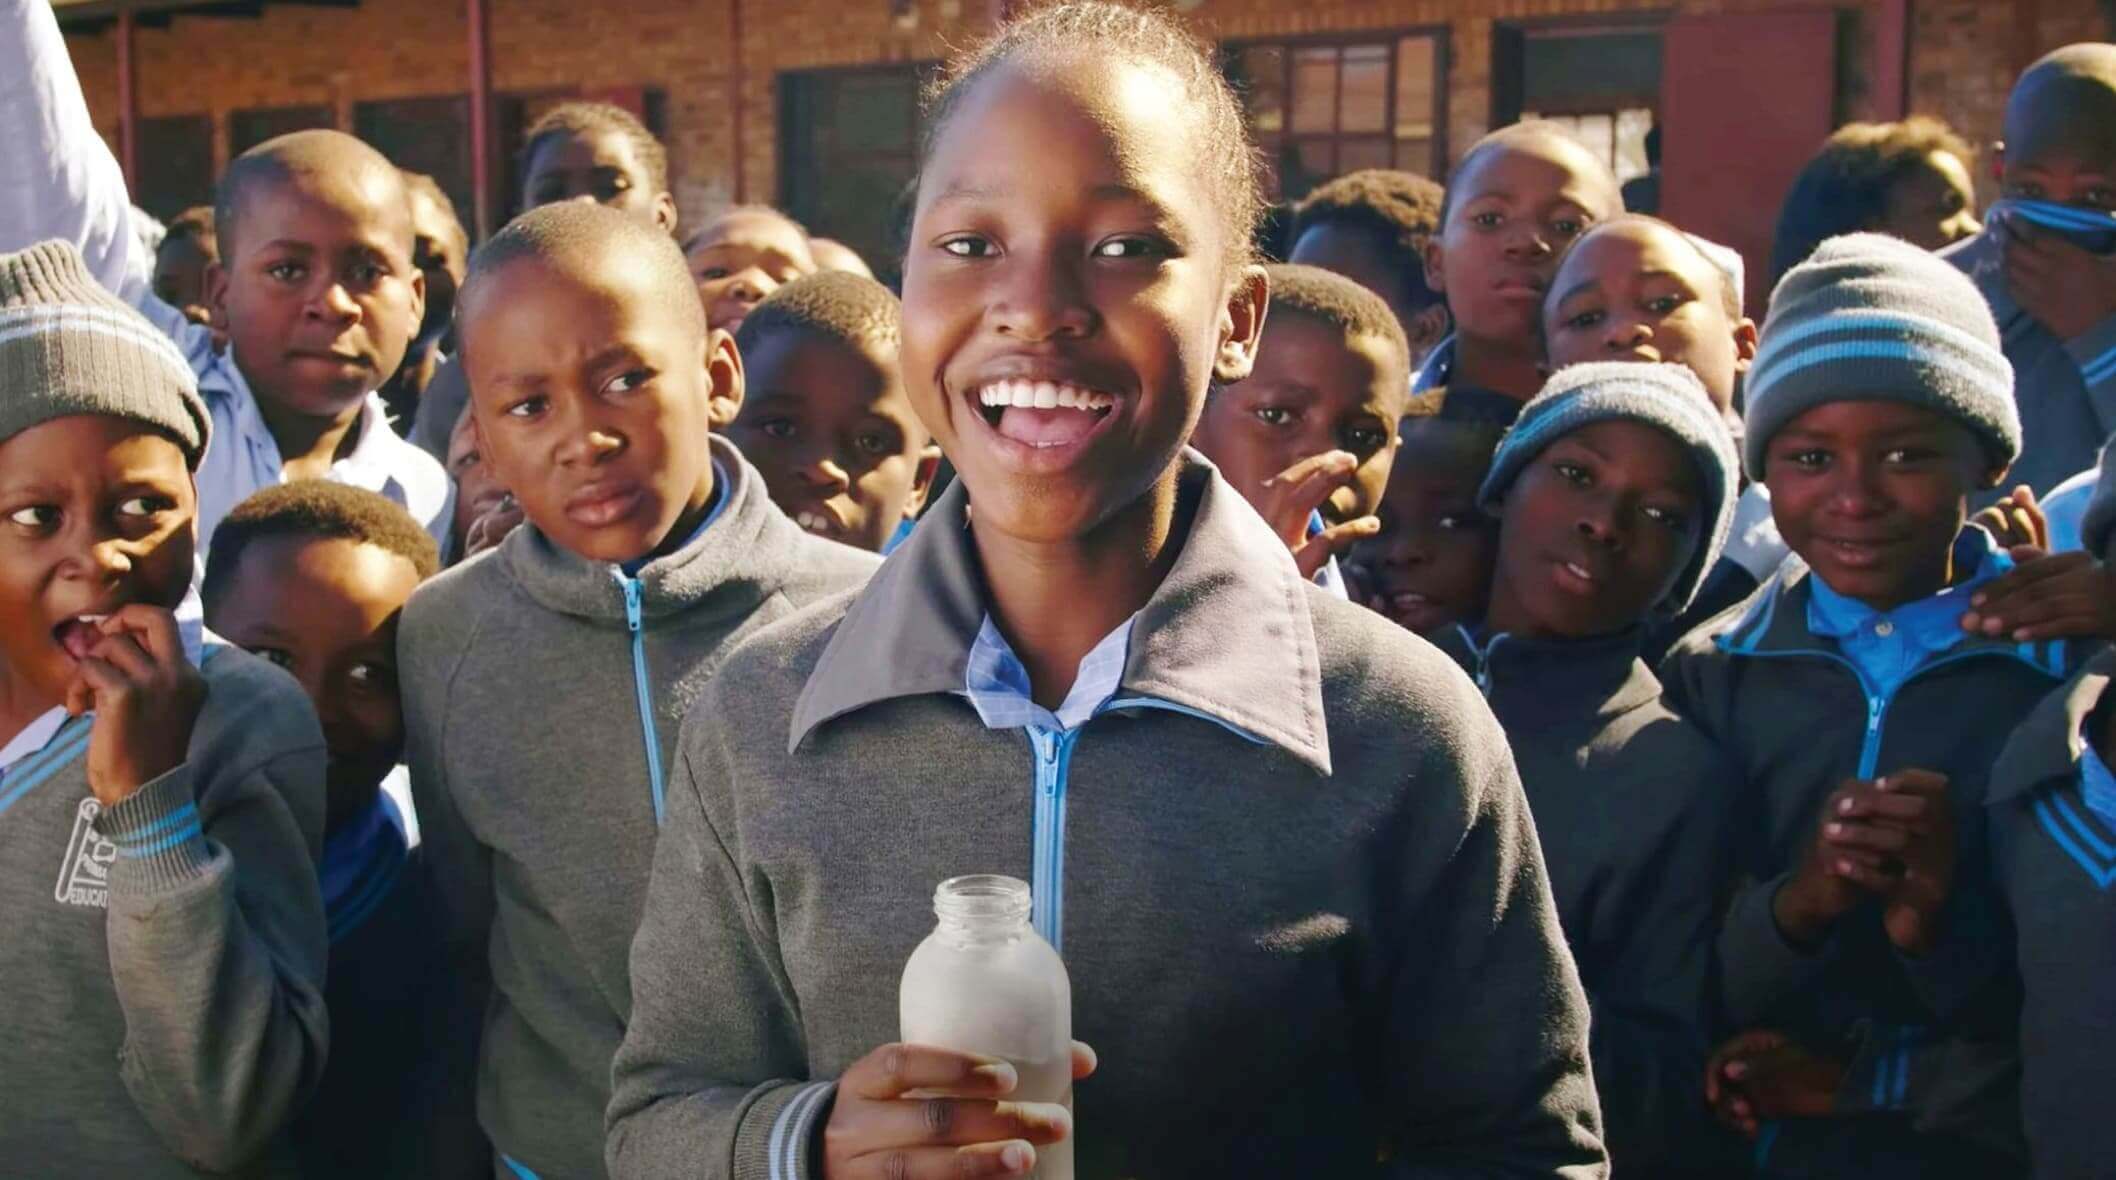 Agua potable y confiable para el municipio de bajos ingresos posterior al apartheid en Johannesburgo